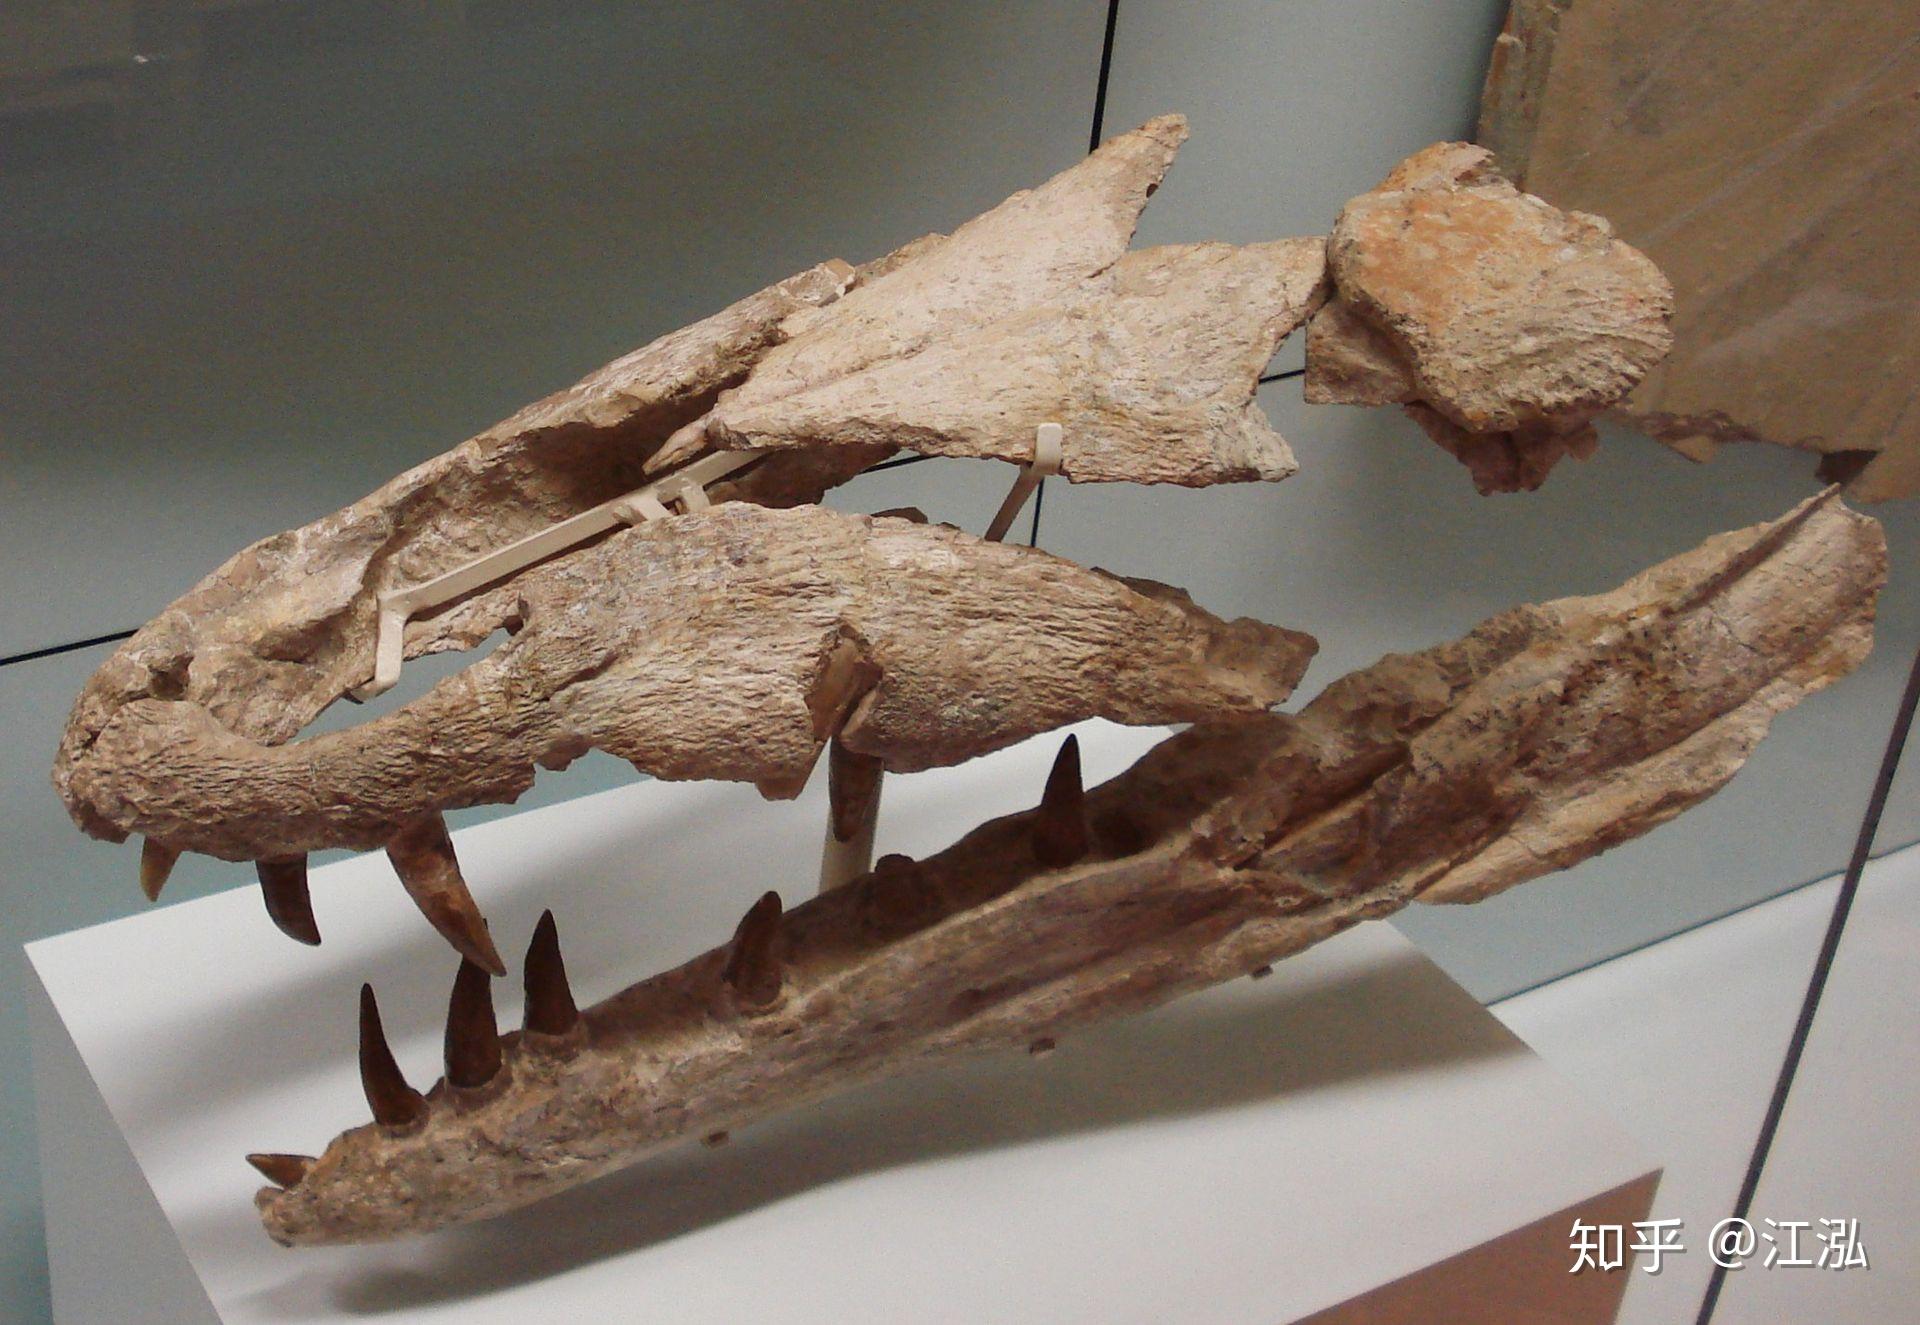 沧龙带动画 沙尼龙 鱼龙 鳄鱼进化 恐龙 游动的鱼龙 蛇颈龙 石炭纪 远古生物-cg模型免费下载-CG99